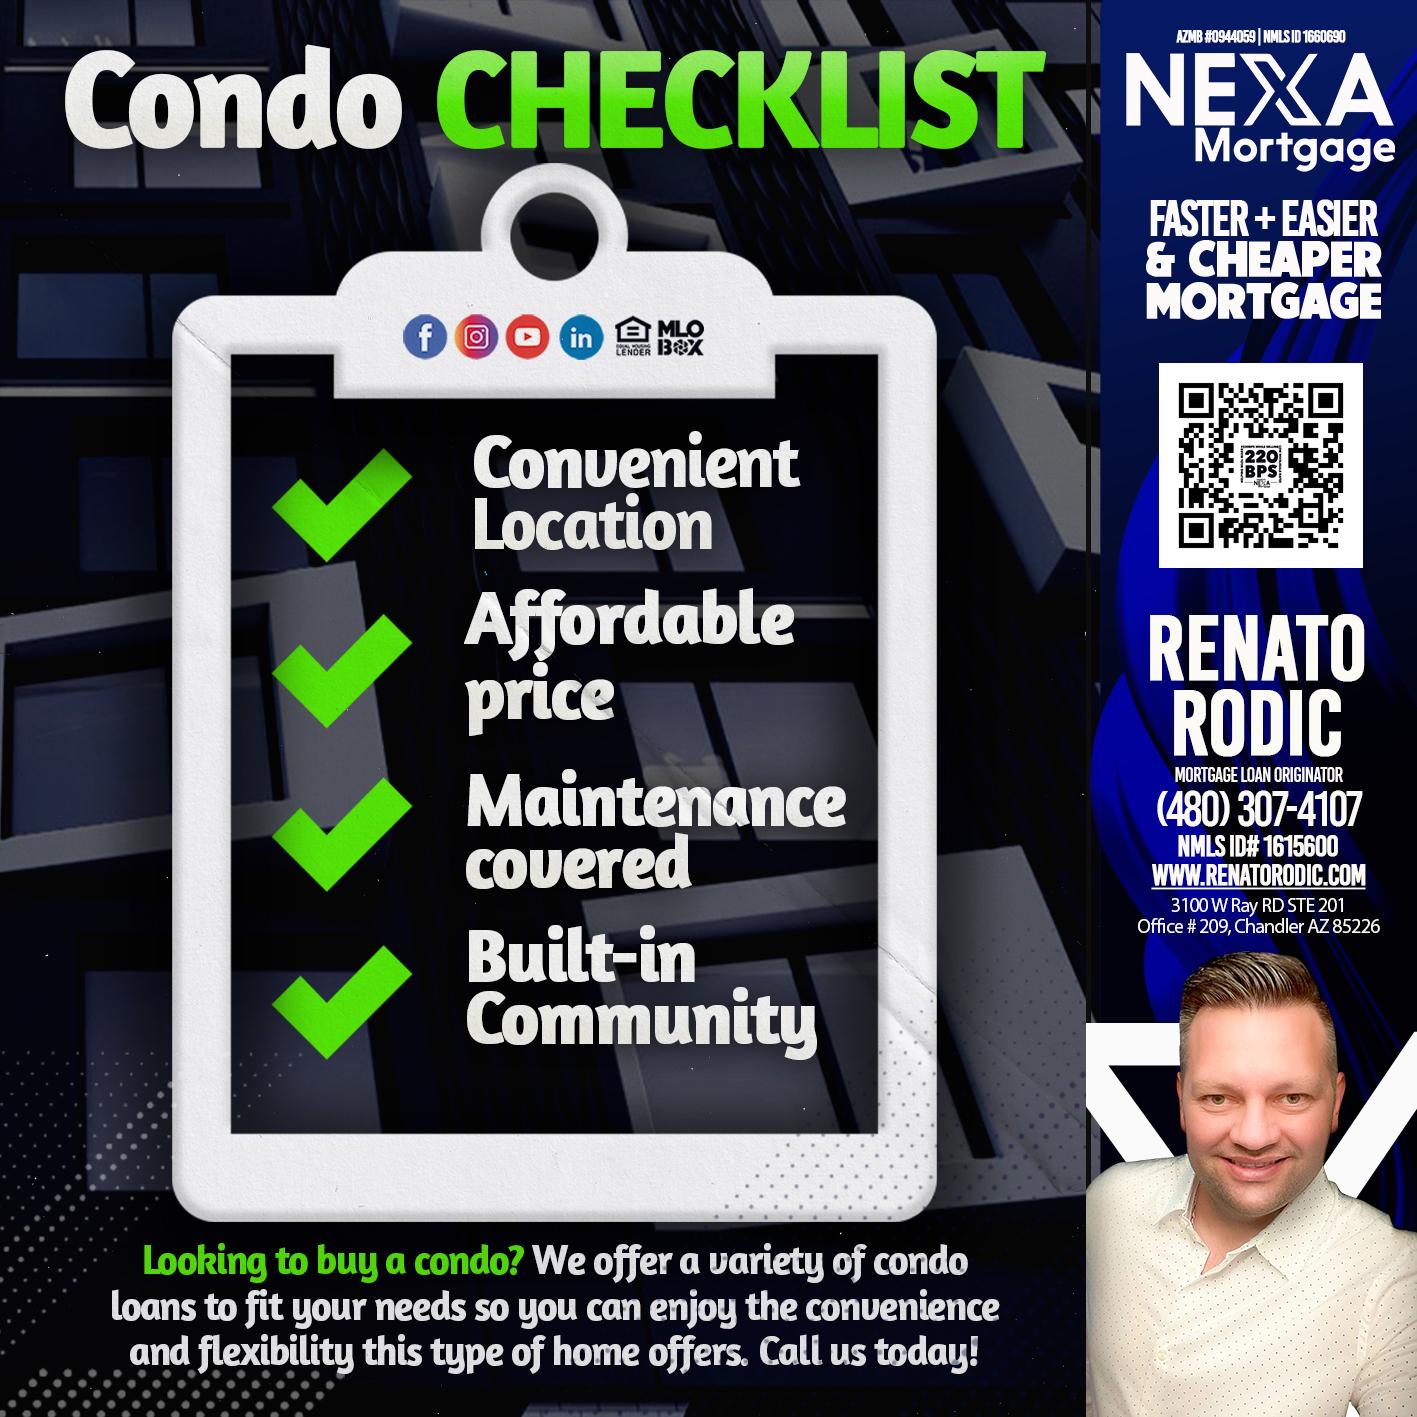 CONDO CHECKLIST - Renato Rodic -Mortgage Loan Originator